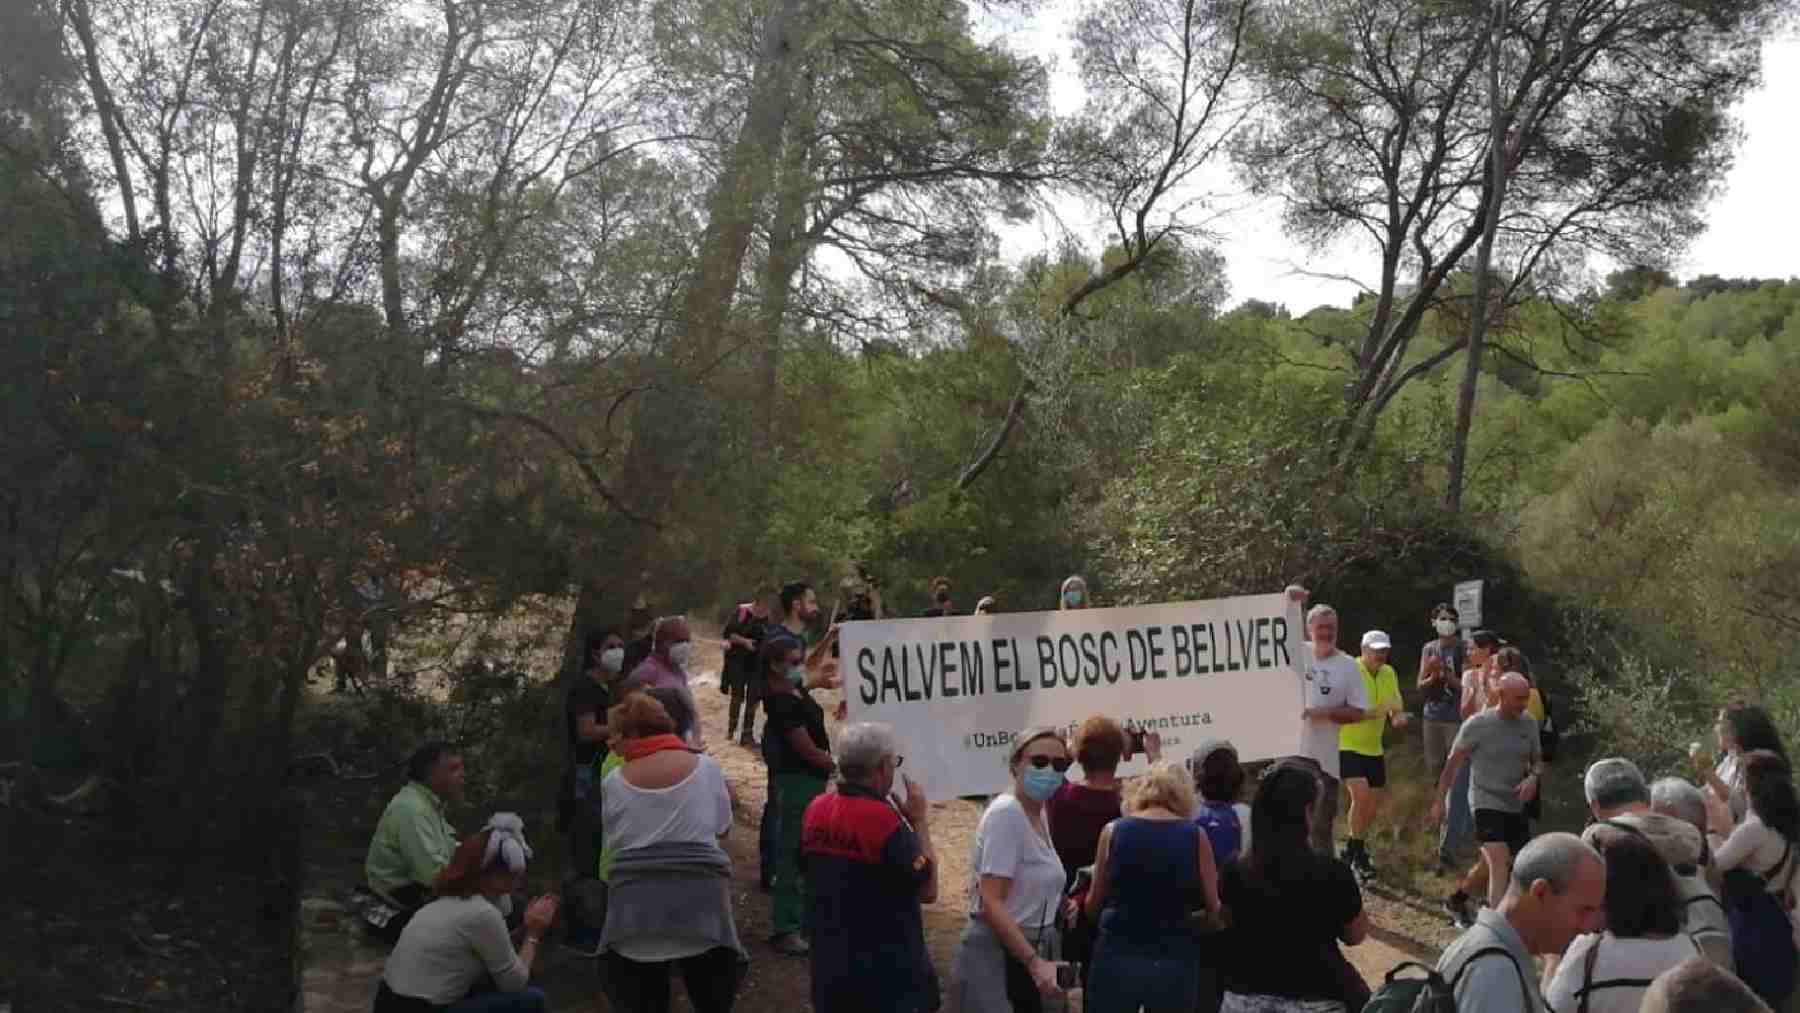 Manifestación vecinal contra la construcción de un parque de aventuras en el bosque de Bellver de Palma.